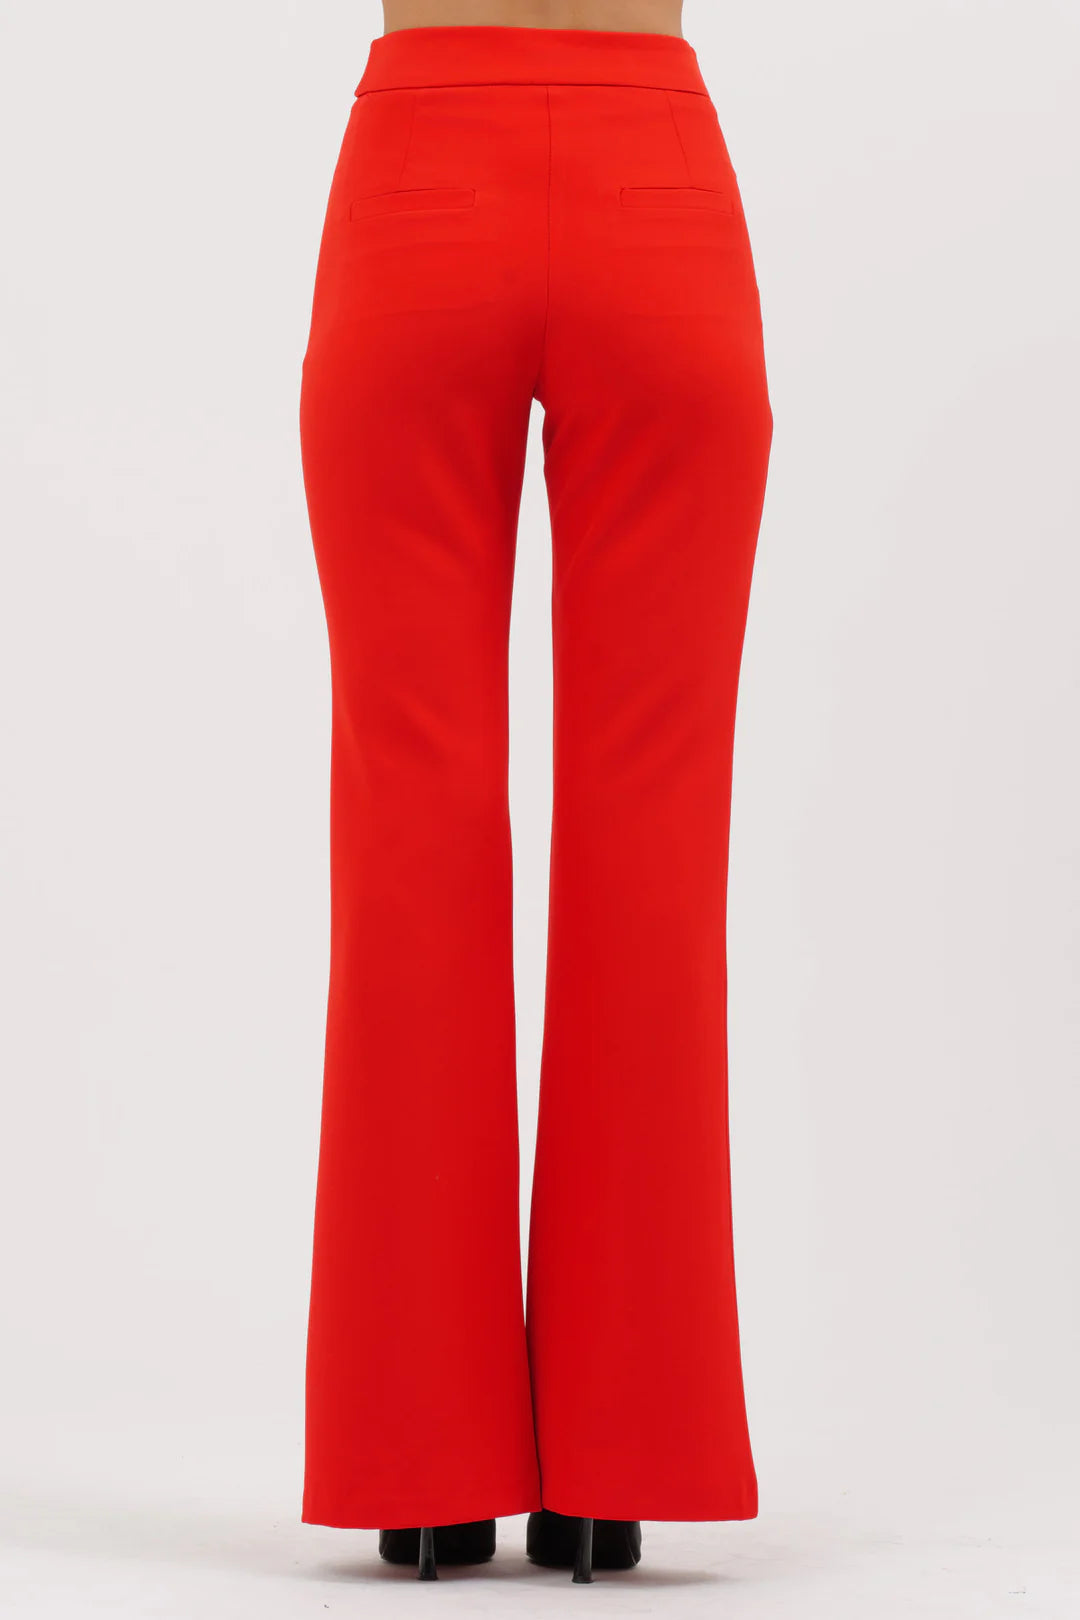 Silence Limited pantalone Libra (disponibile rosso e beige)